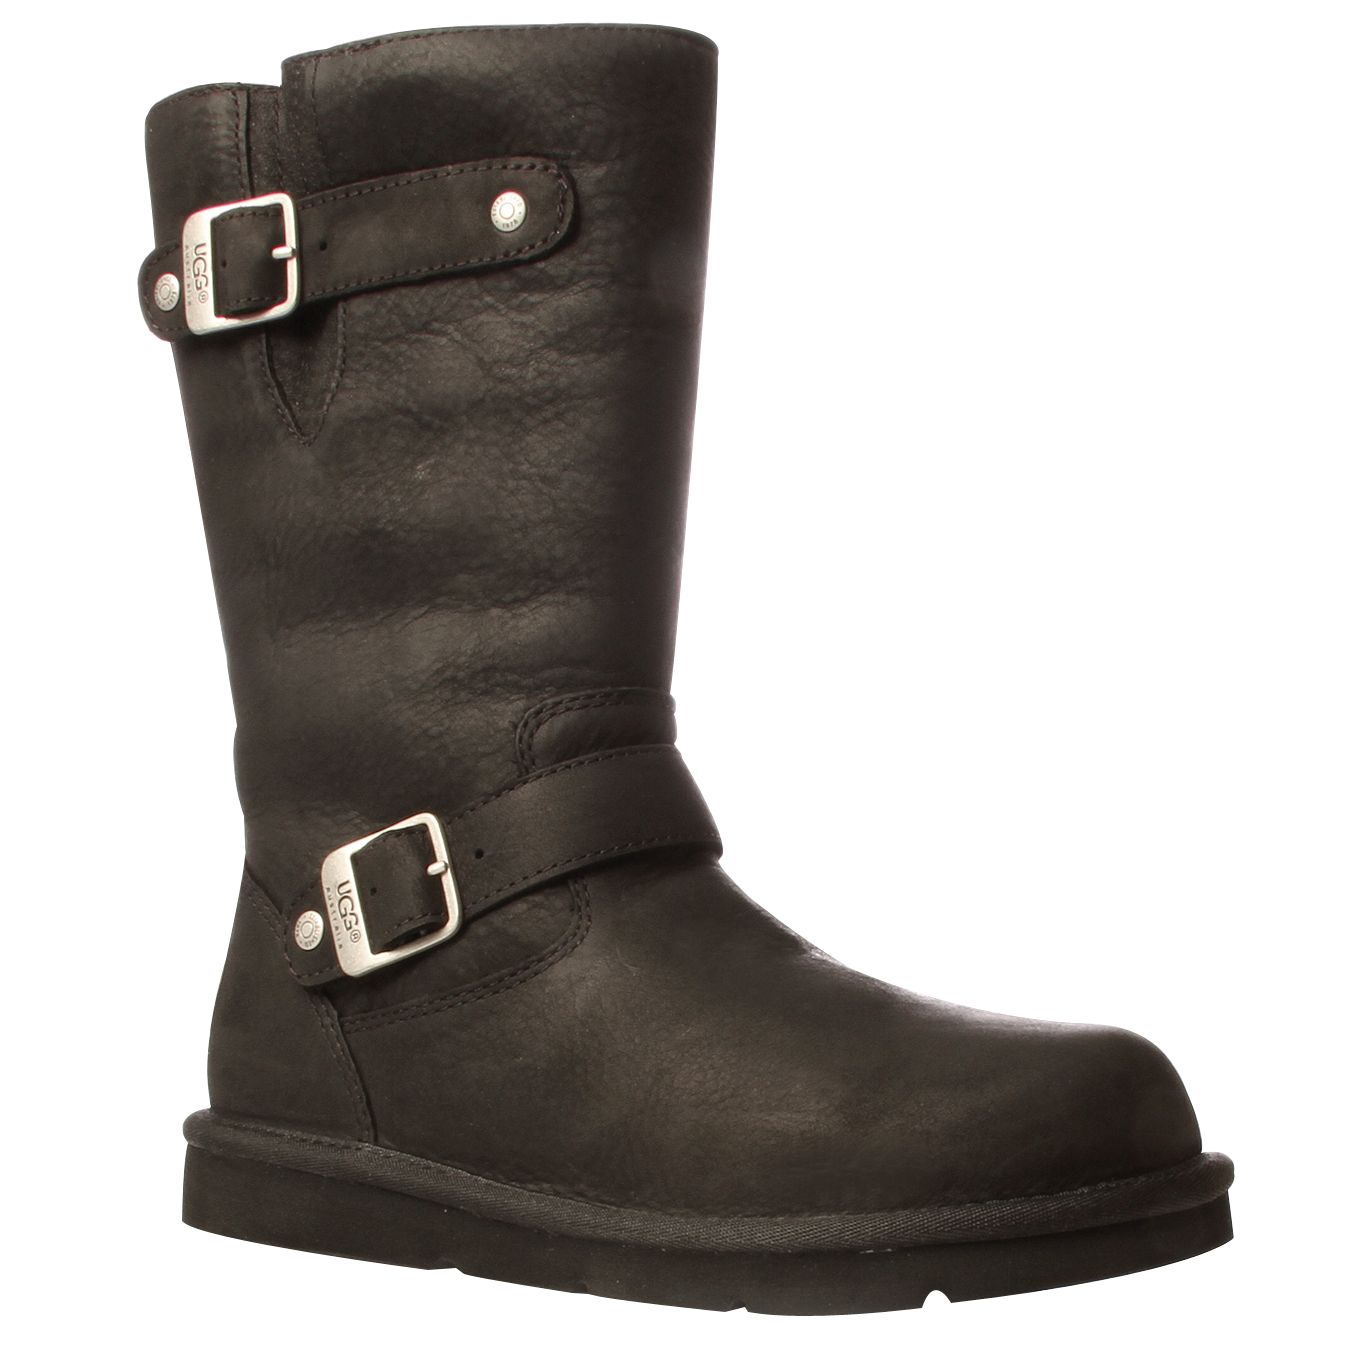 Ugg Kensington Leather Short Boots, Black at JohnLewis